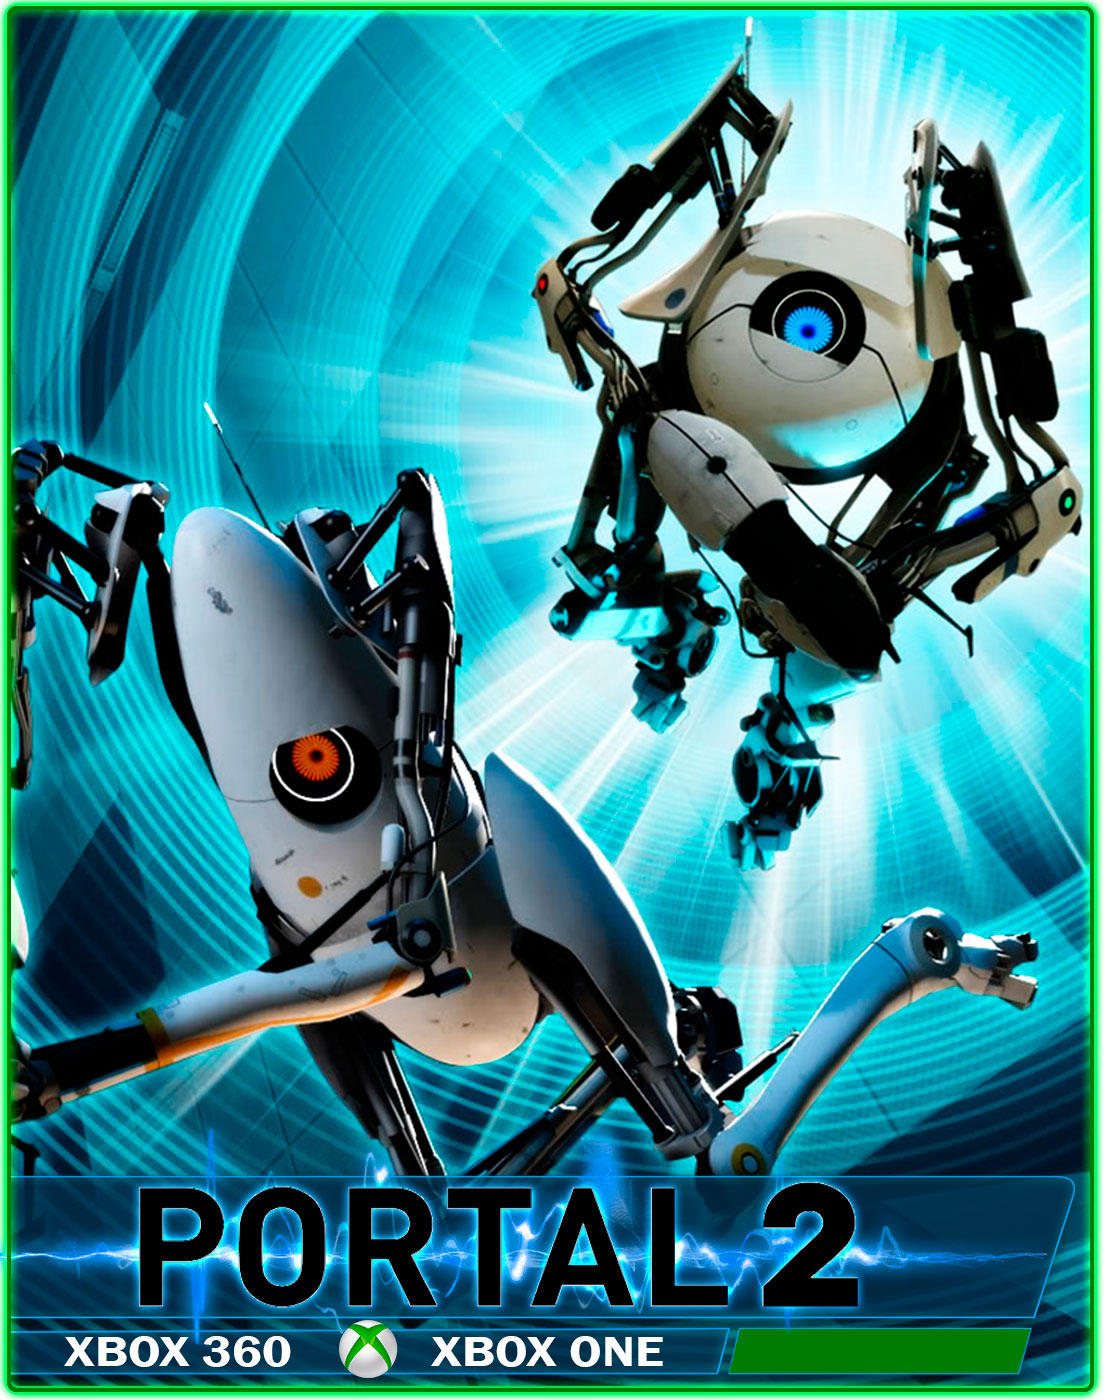 Request portal. Портал 2. Портал игра. Портал 2 обложка. Портал 2 на Xbox 360.